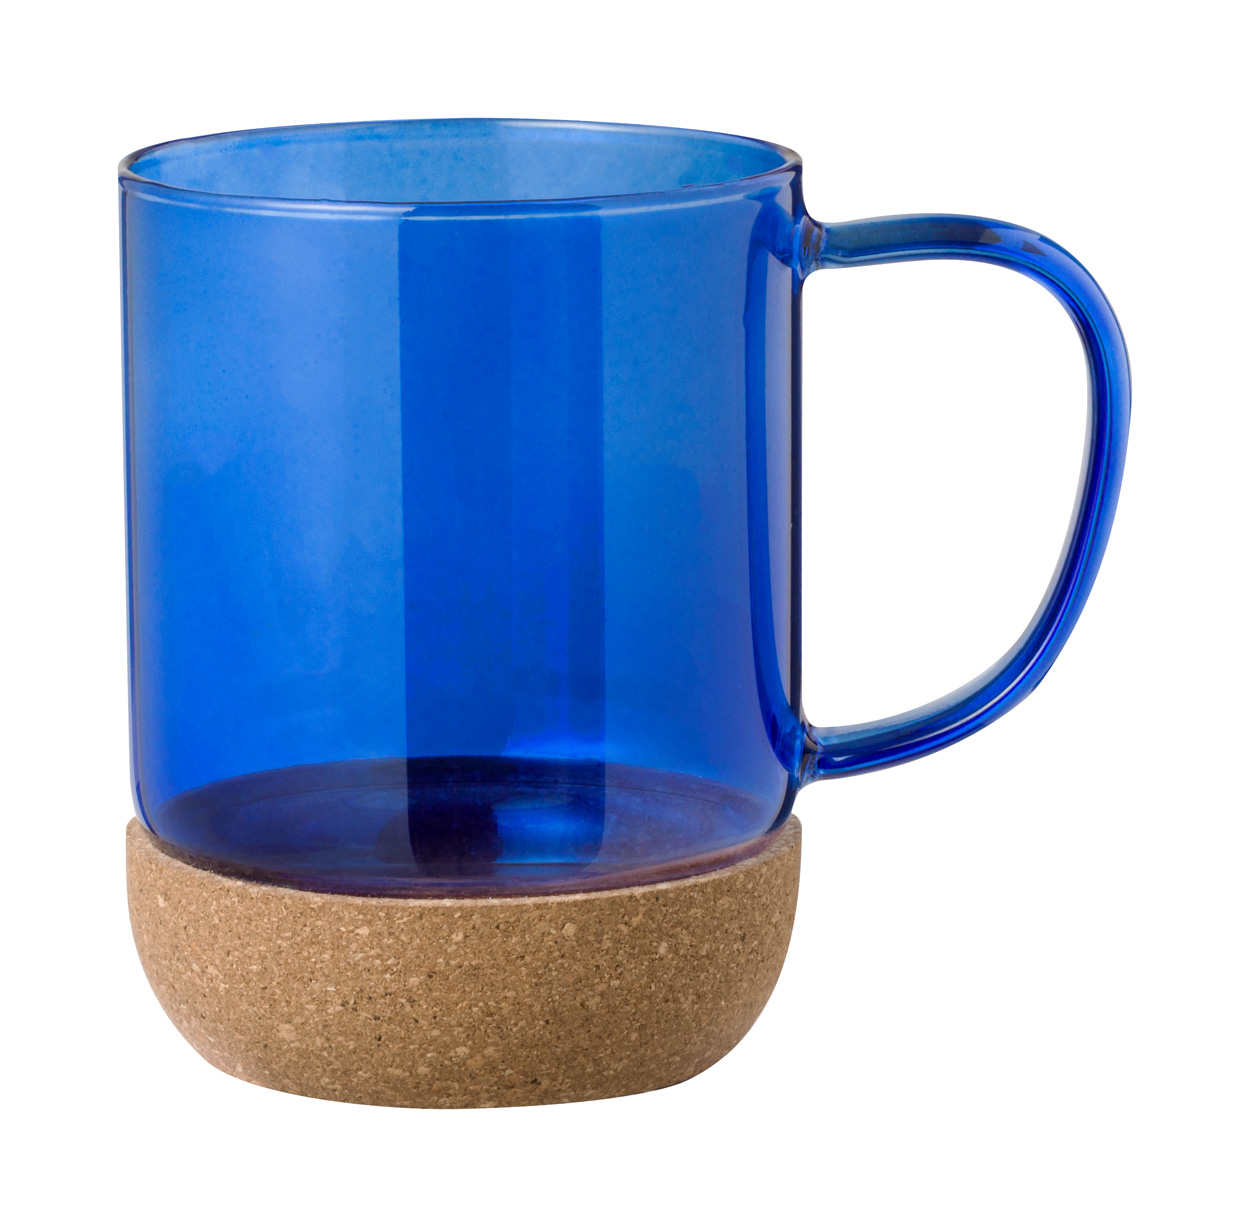 Sarah's mug - blau